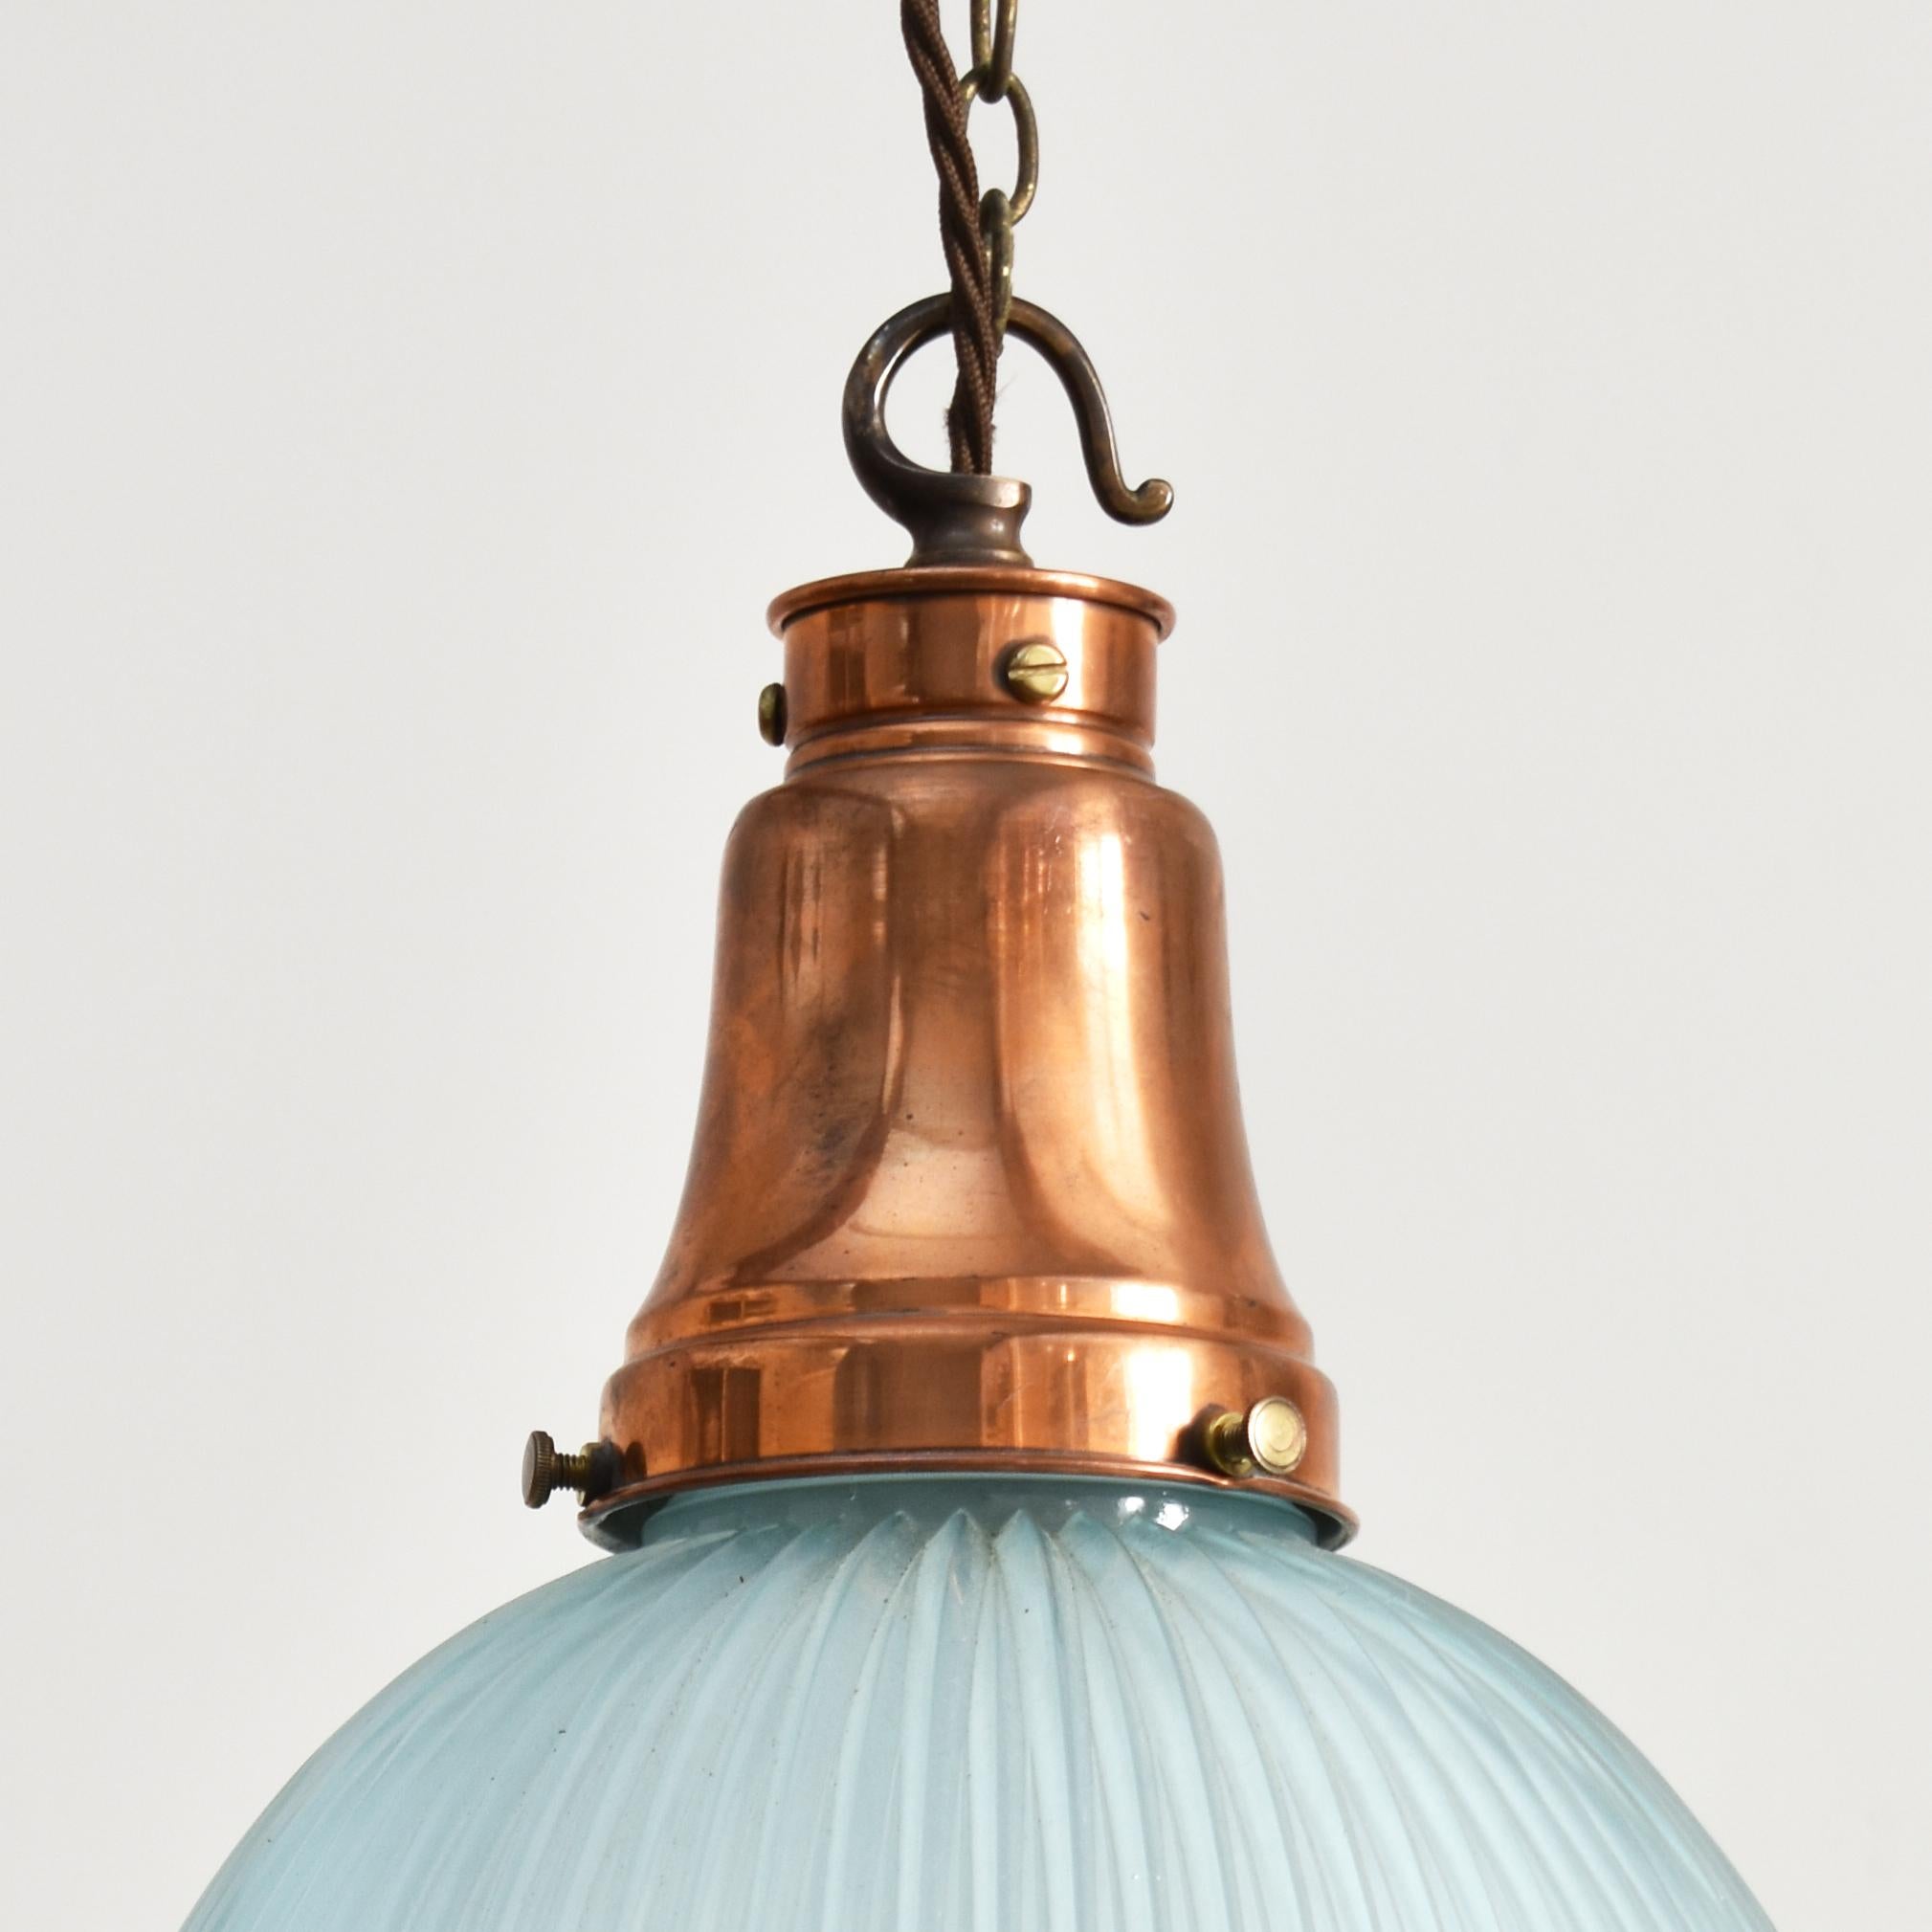 Antike Holophane Pendelleuchte - Blauer Farbton - A

Eine alte Glocken-Hängeleuchte aus Glas, hergestellt von Holophane, in einer ungewöhnlichen blauen Glasfarbe. Die Leuchte hat eine polierte GEC-Galerie aus Messing, die mit der ursprünglichen